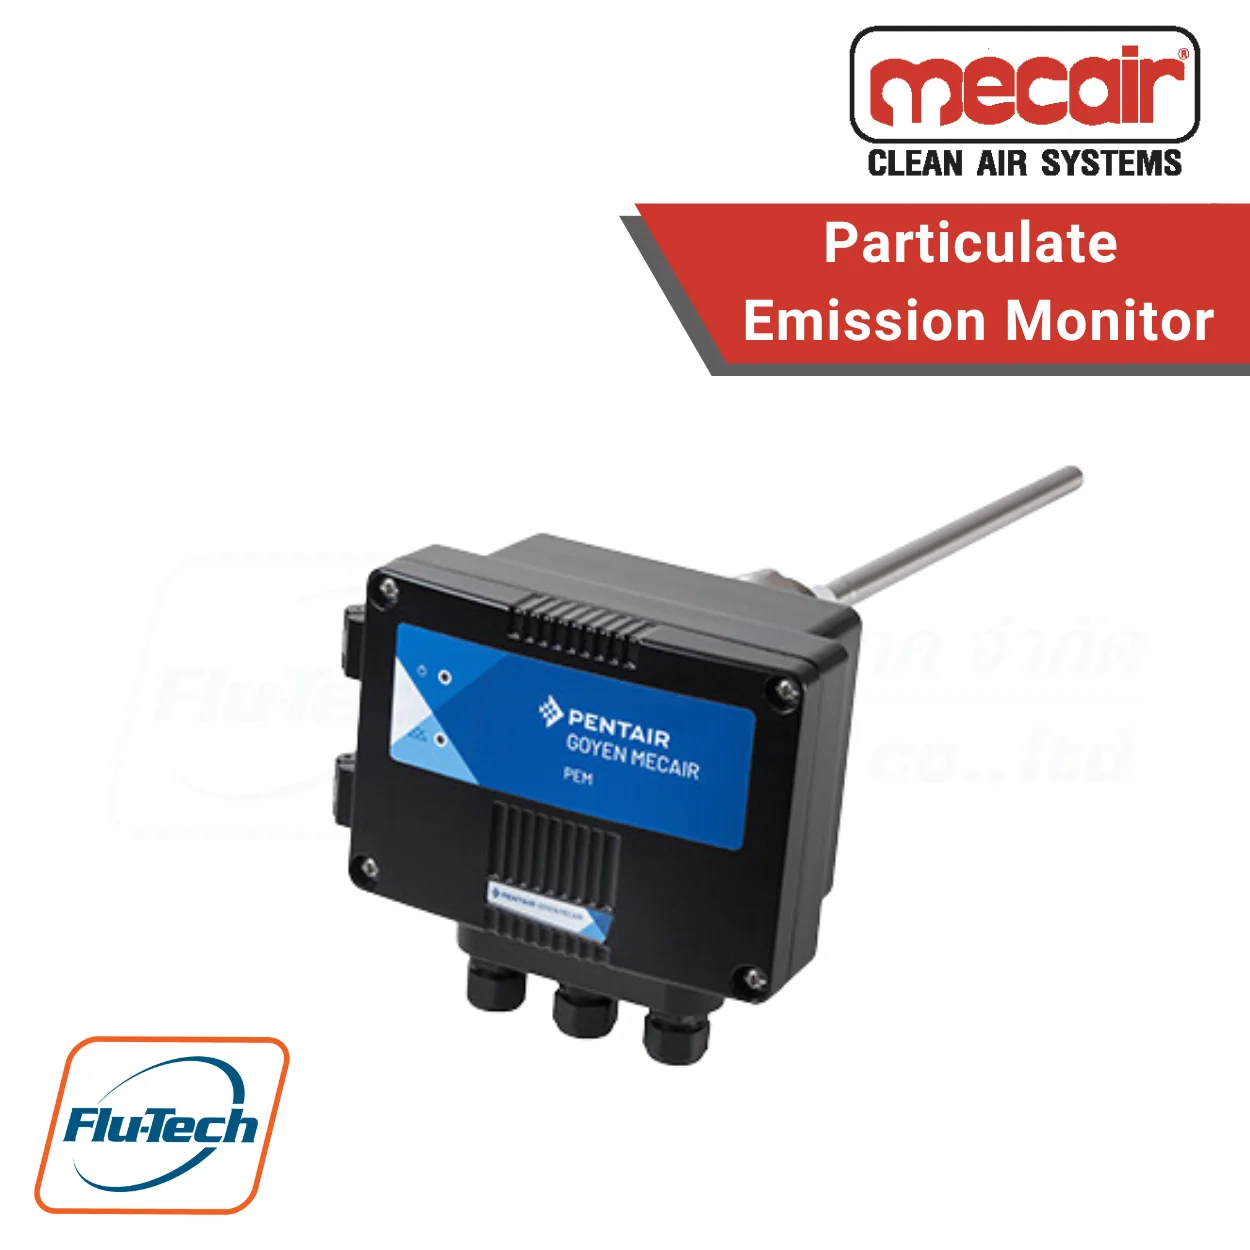 เครื่องตรวจวัดการปล่อยมลพิษ จาก Pentair Mecair PEM Particulate Emission Monitor